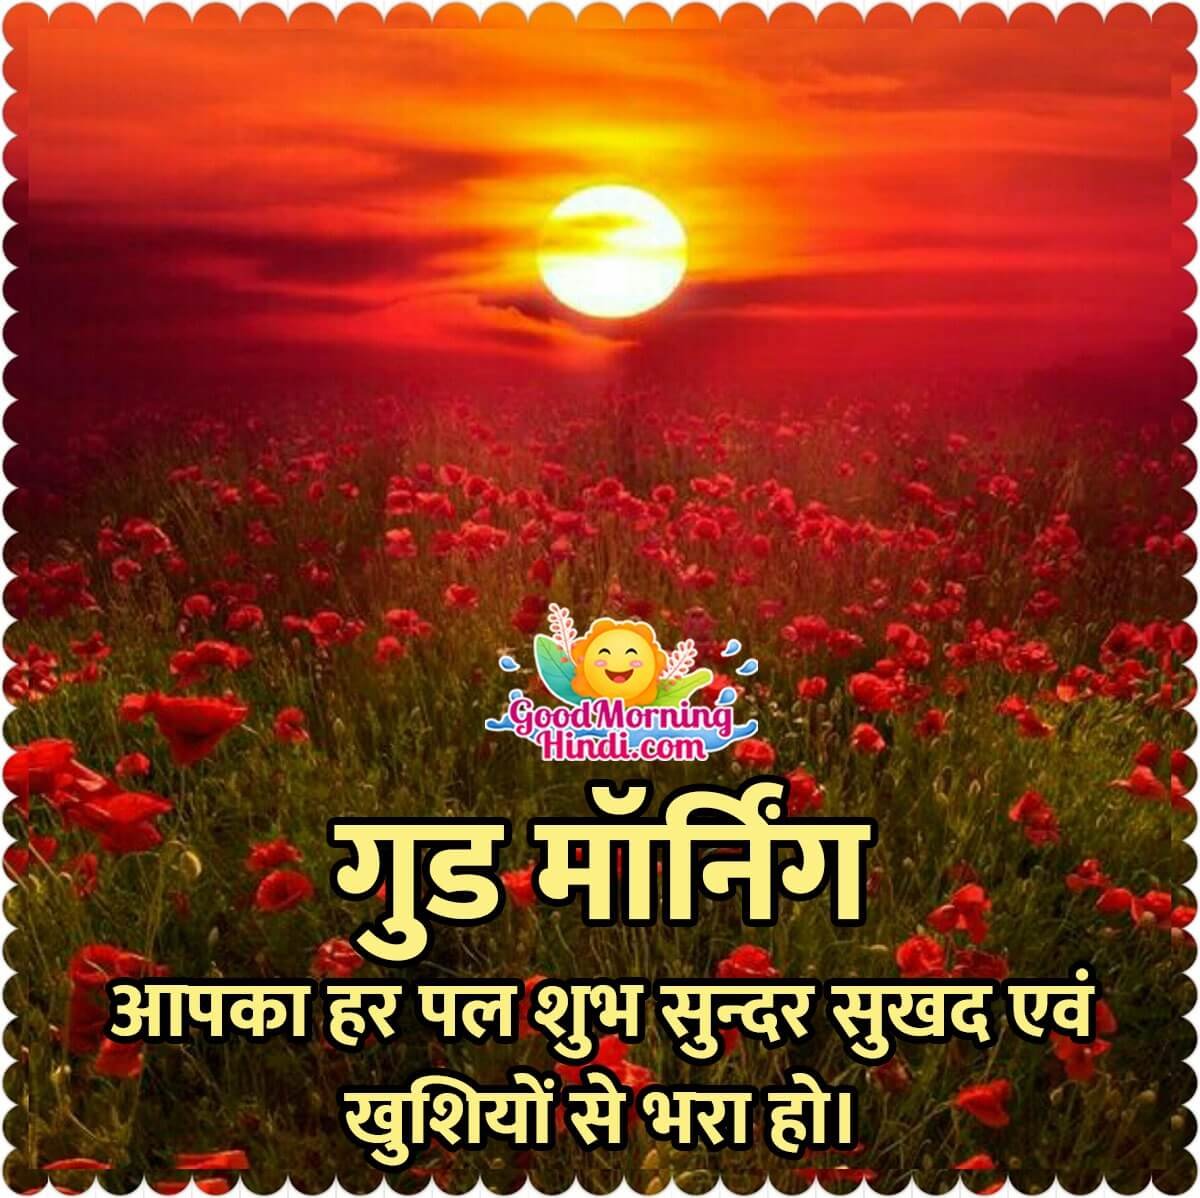 Good Morning Hindi Sunrise Images